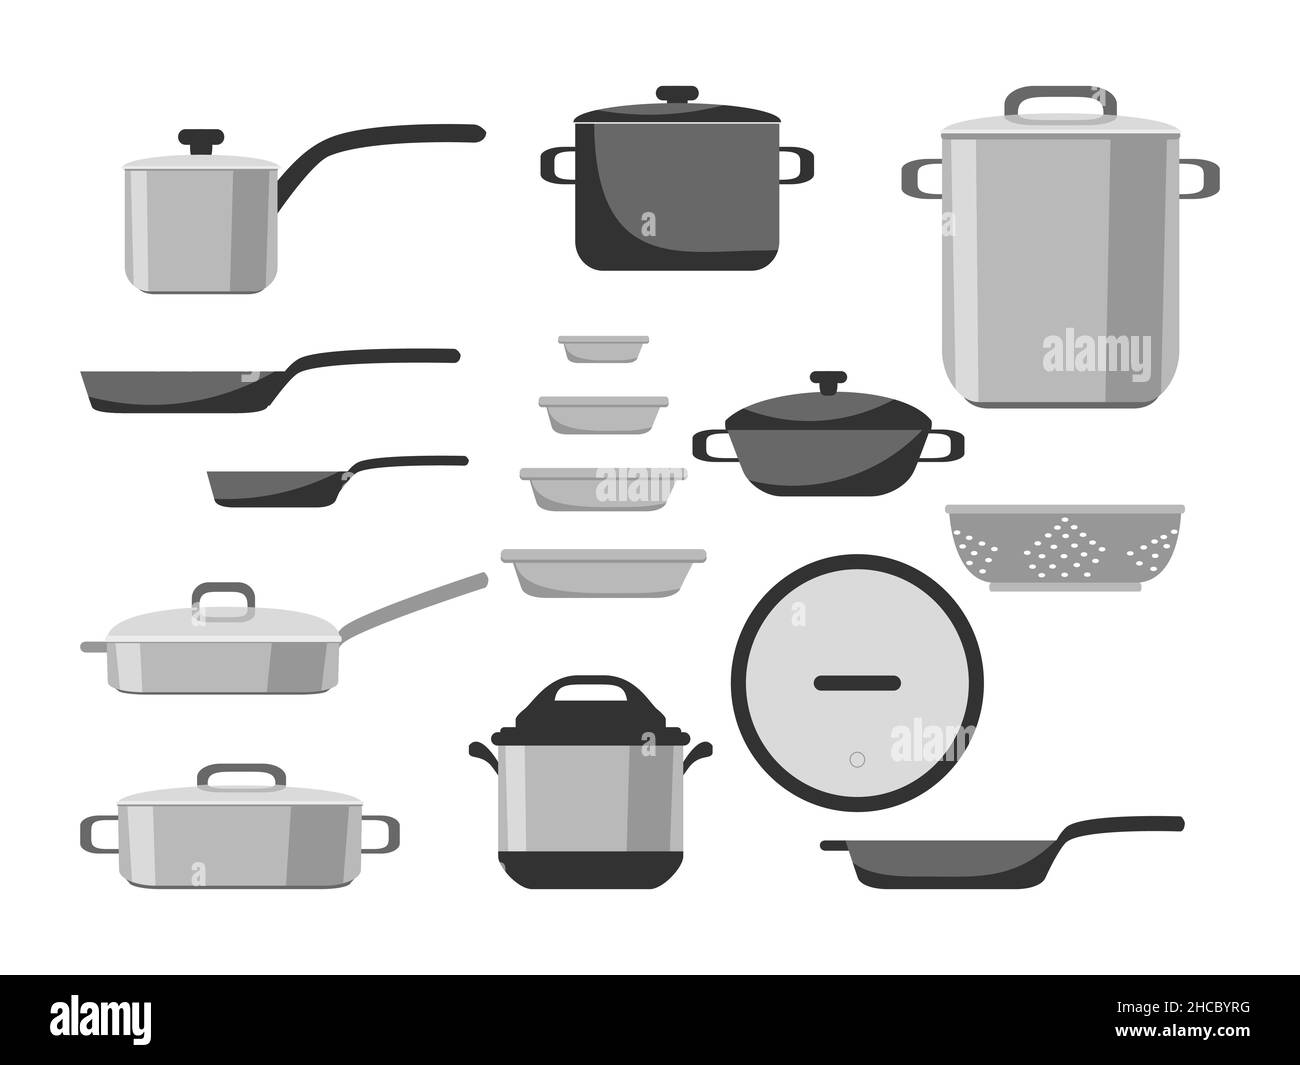 https://c8.alamy.com/compes/2hcbyrg/juego-de-utensilios-de-cocina-ollas-sartenes-cacerolas-y-utensilios-de-cocina-de-acero-inoxidable-y-antiadherentes-aislados-sobre-fondo-blanco-ilustracion-vectorial-gatito-2hcbyrg.jpg